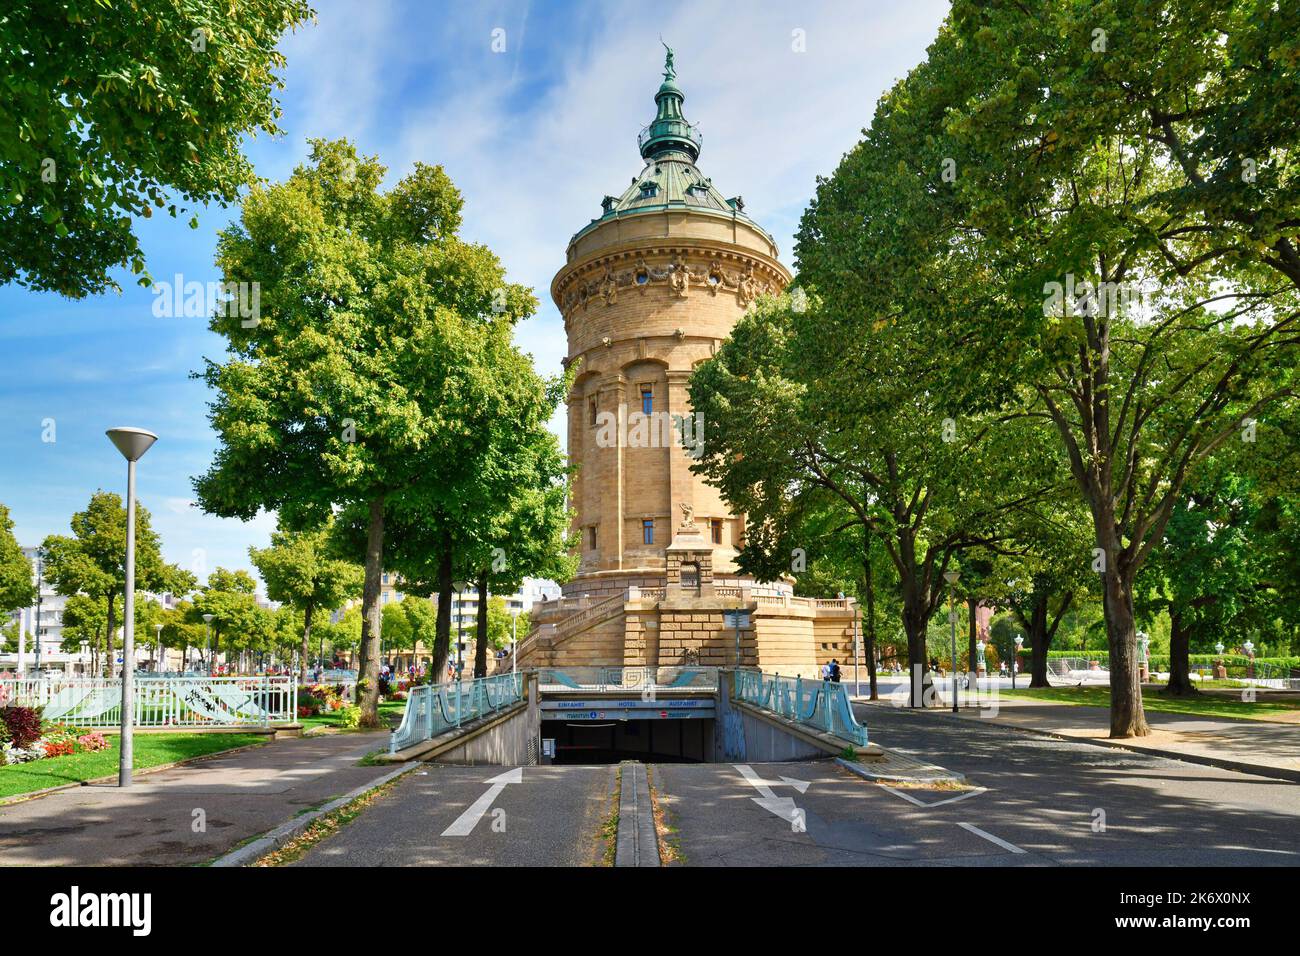 Mannheim, Deutschland - September 2022: Eingang der Tiefgarage 'Tiefgarage Kunsthalle' am Wasserturm mit dem Namen 'Wasserturm', einem Wahrzeichen von G Stockfoto